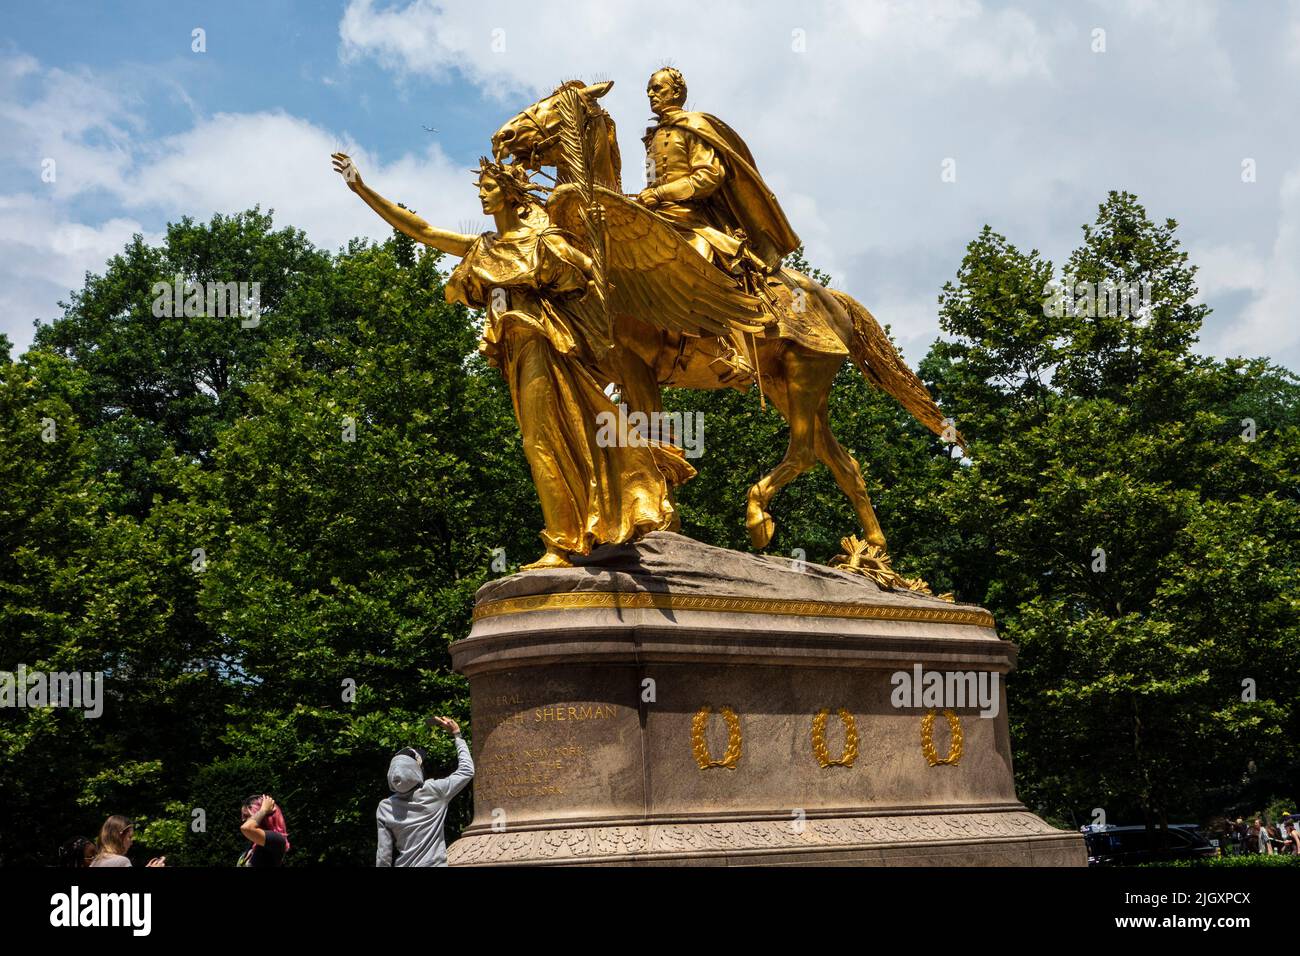 Turista tomando una foto del Monumento a William Tecumseh Sherman, Grand Army Plaza en la ciudad de Nueva York, Nueva York, Estados Unidos de América Foto de stock